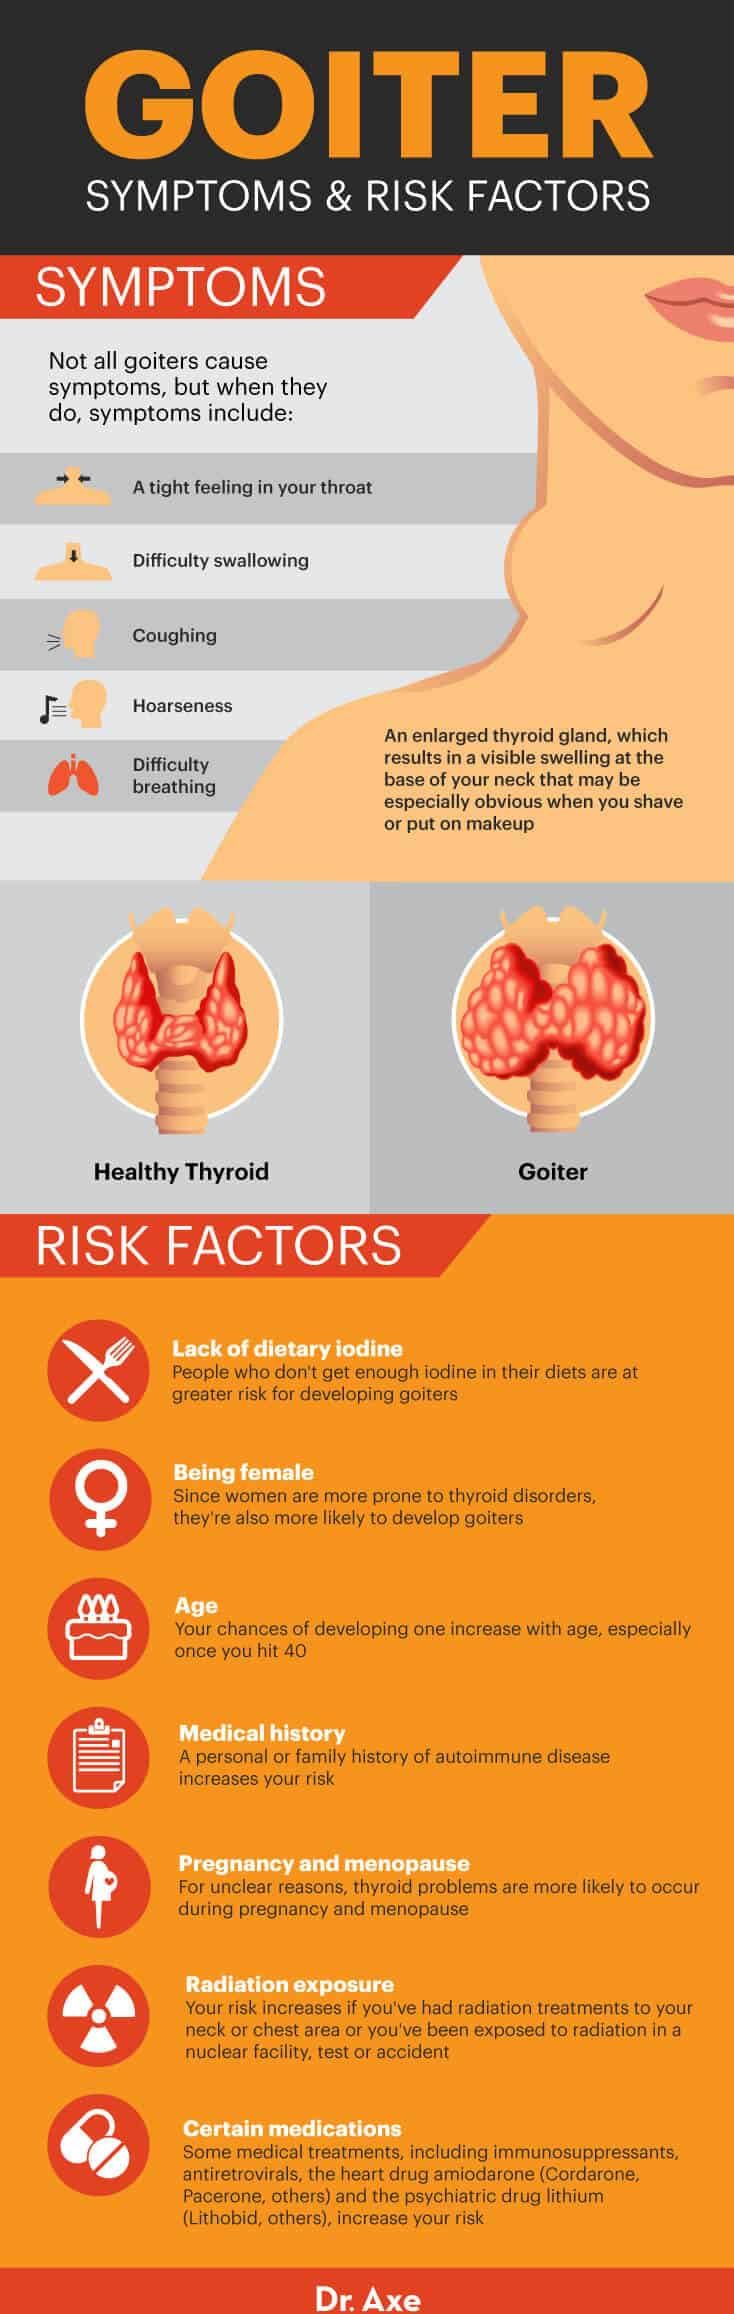 Symptômes du goitre et facteurs de risque - Dr Axe